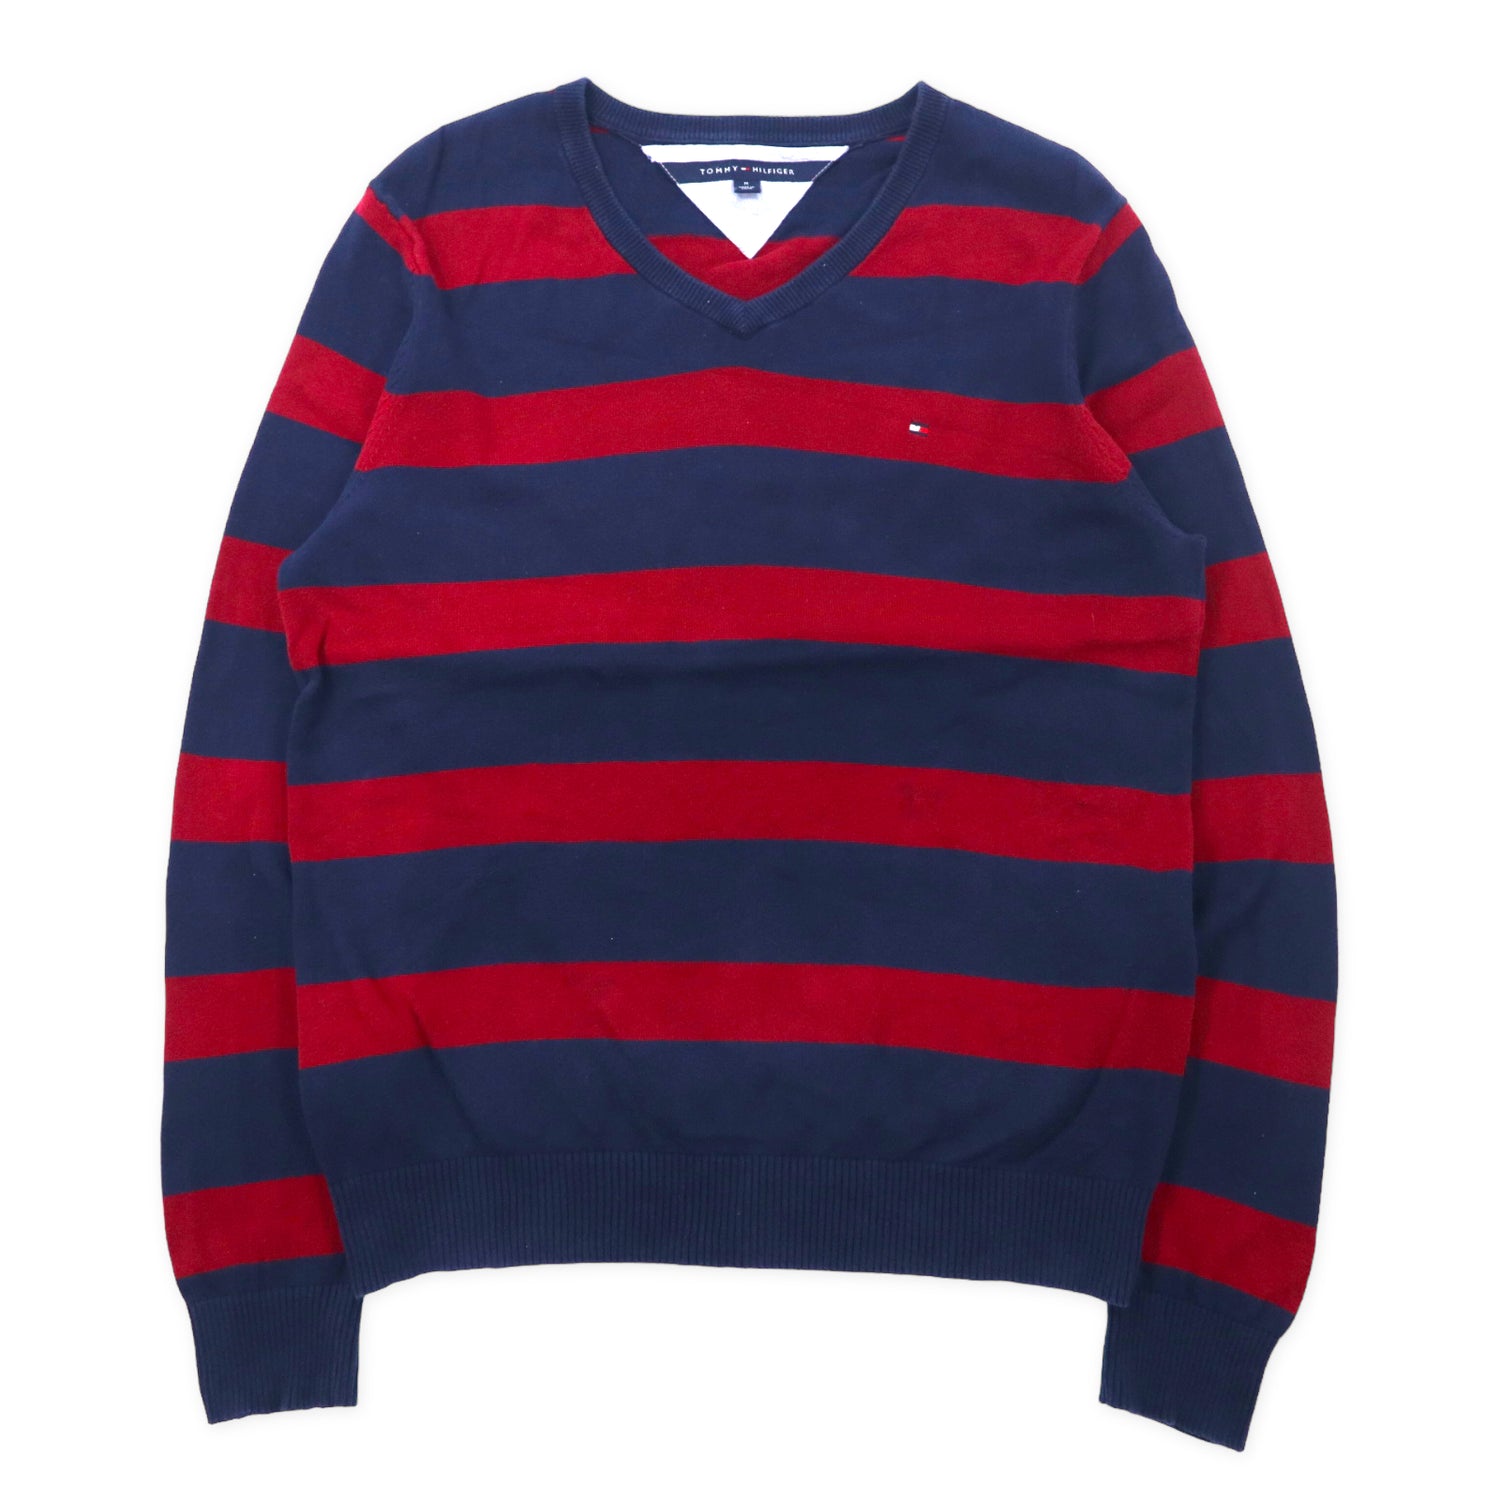 TOMMY HILFIGER V neck knit sweater M navy red striped cotton